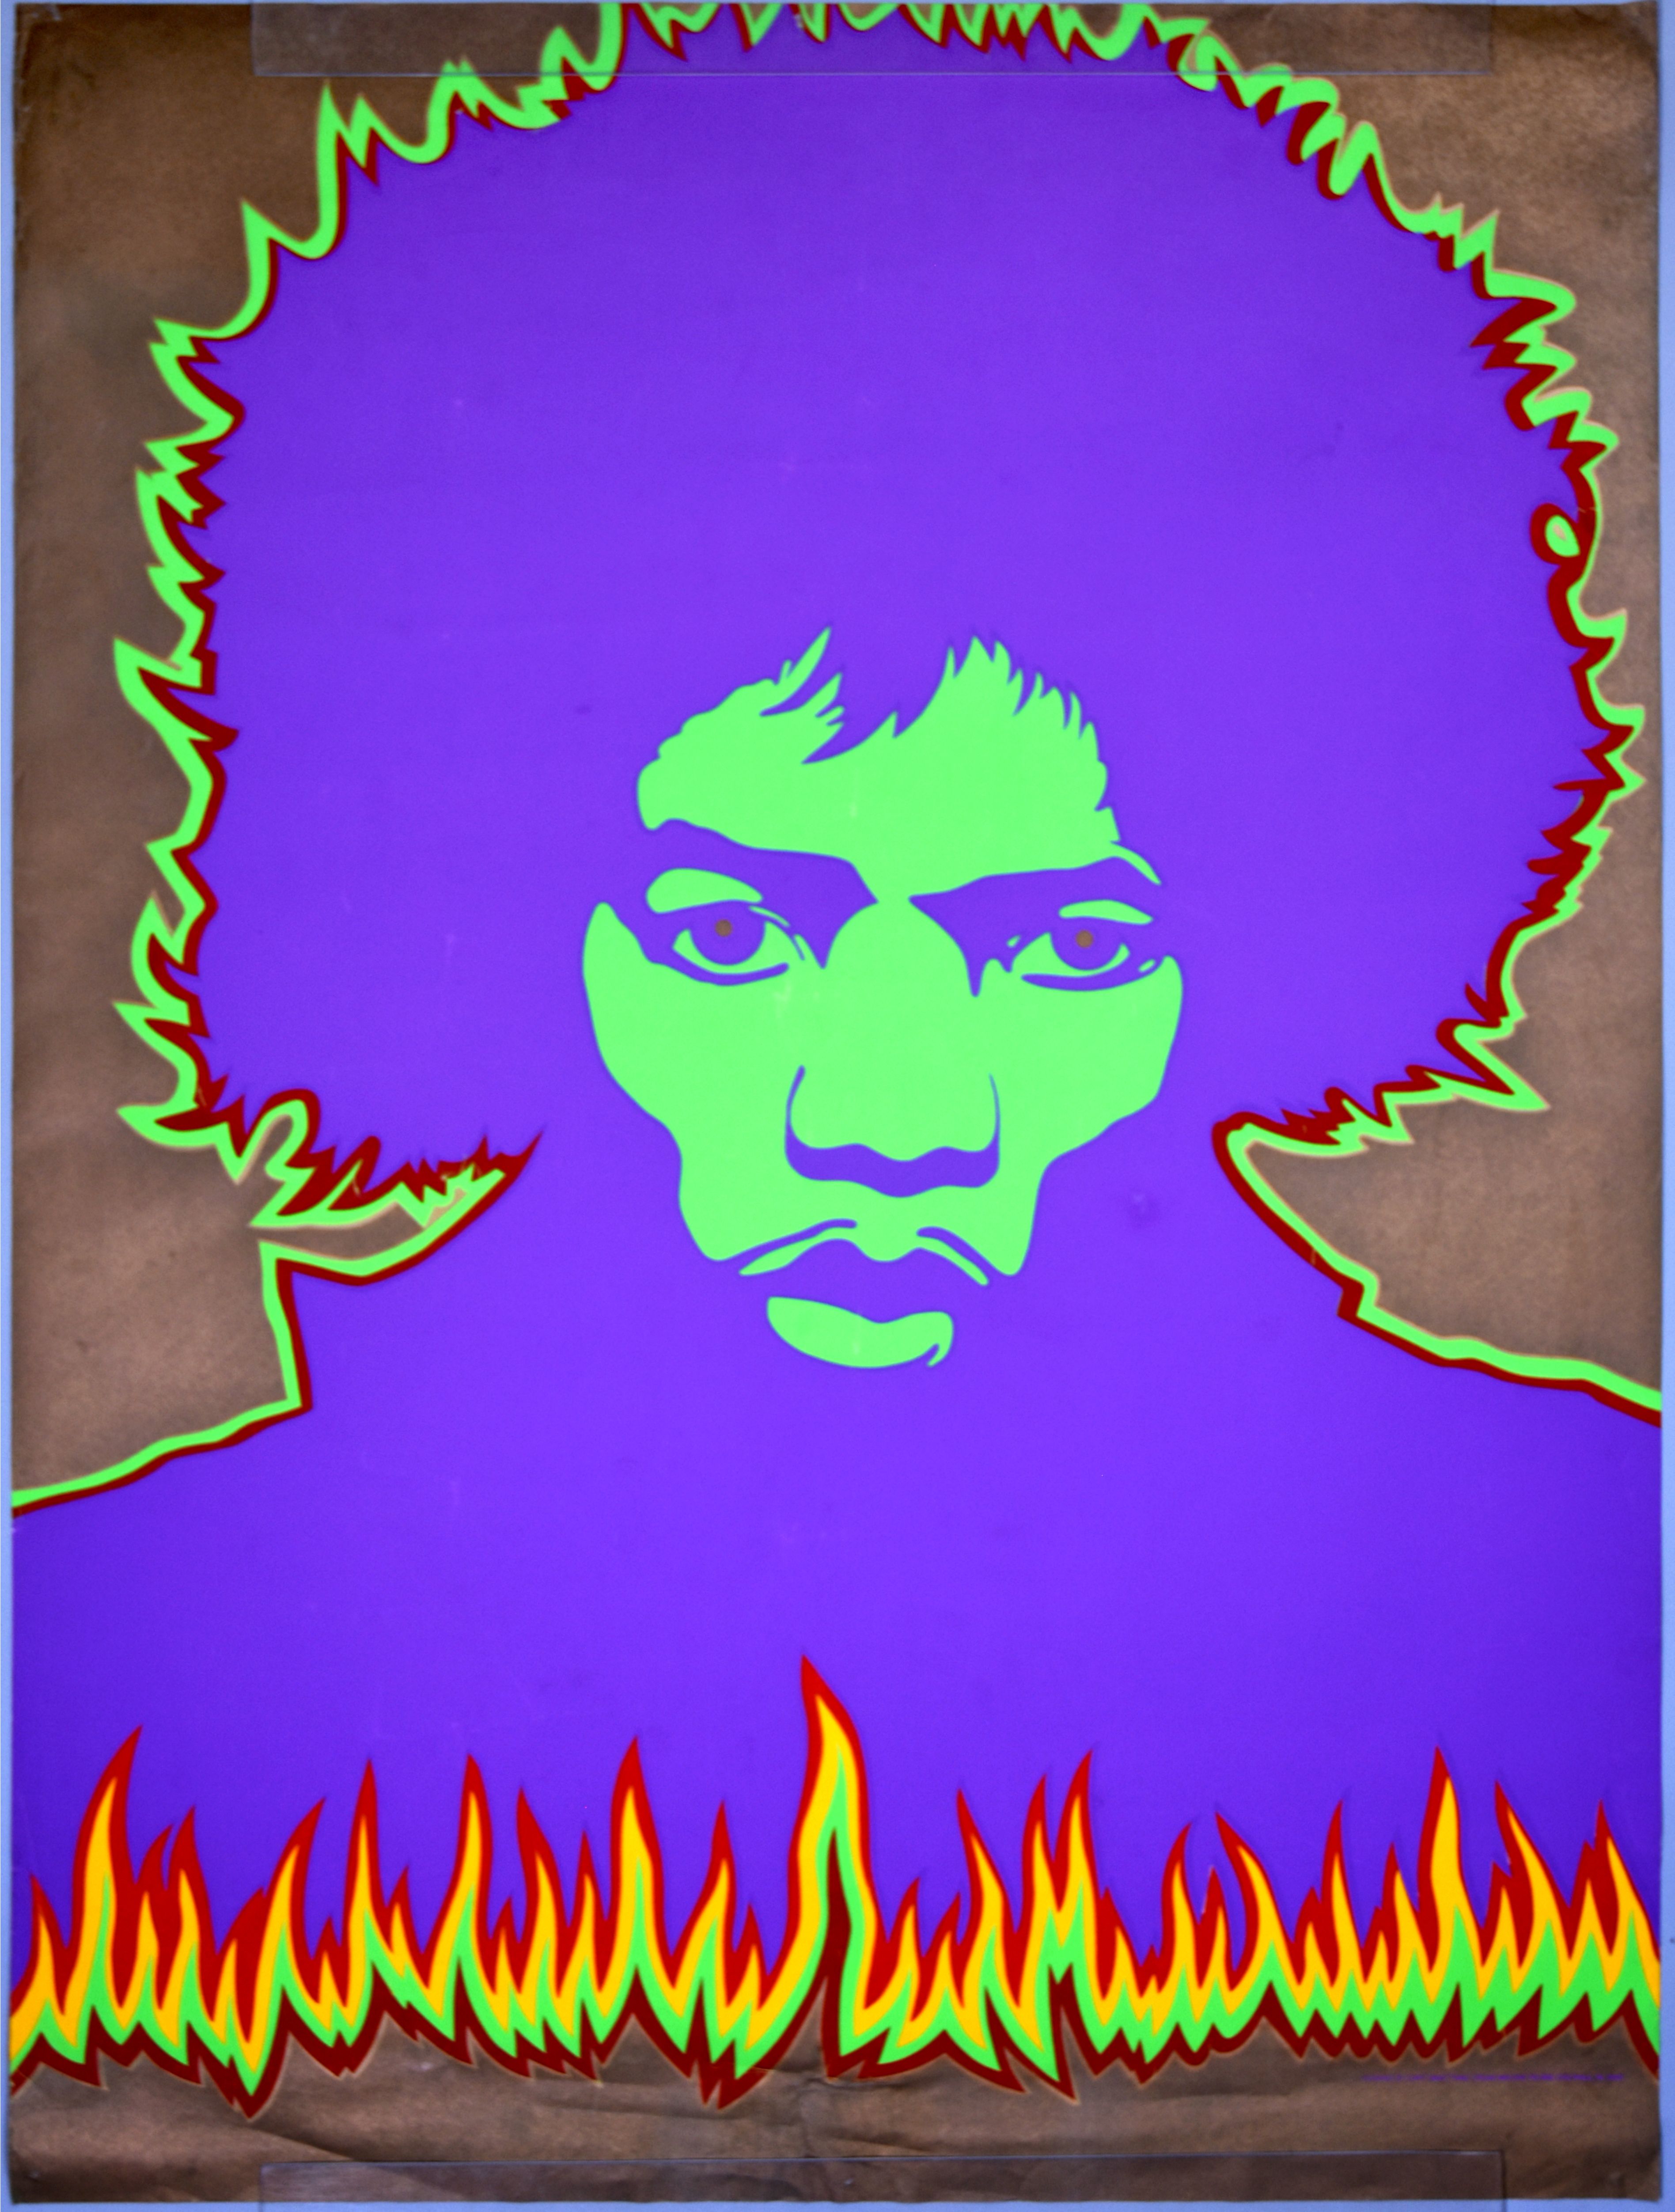 Jimi Hendrix "Fire" Silkscreen Poster 1968 Concert Poster